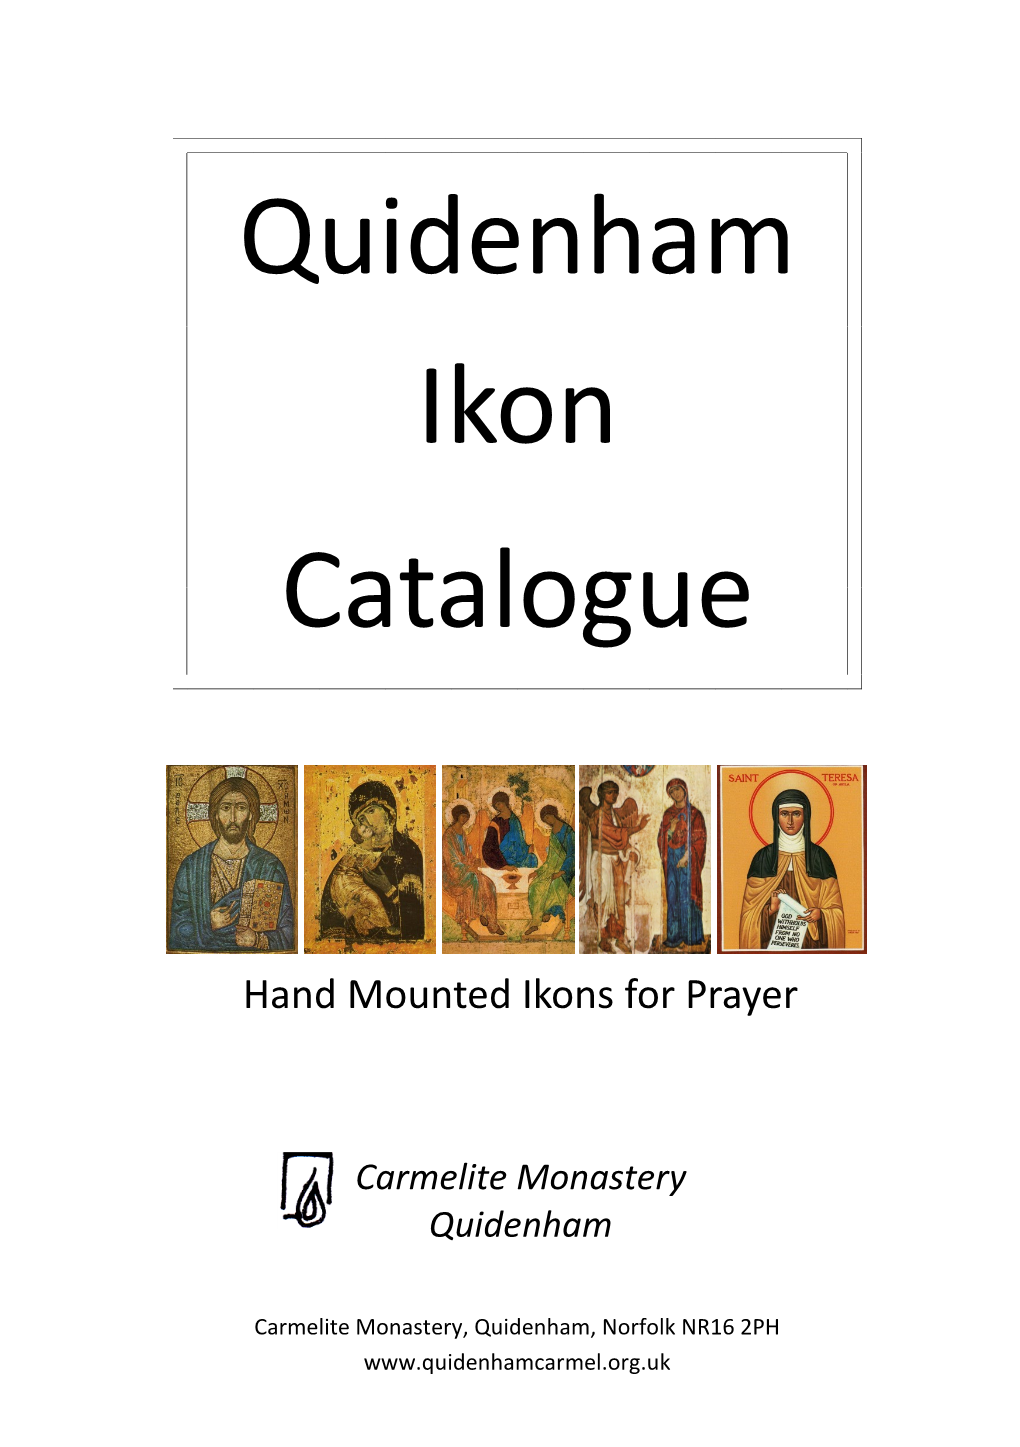 Quidenham Ikon Catalogue